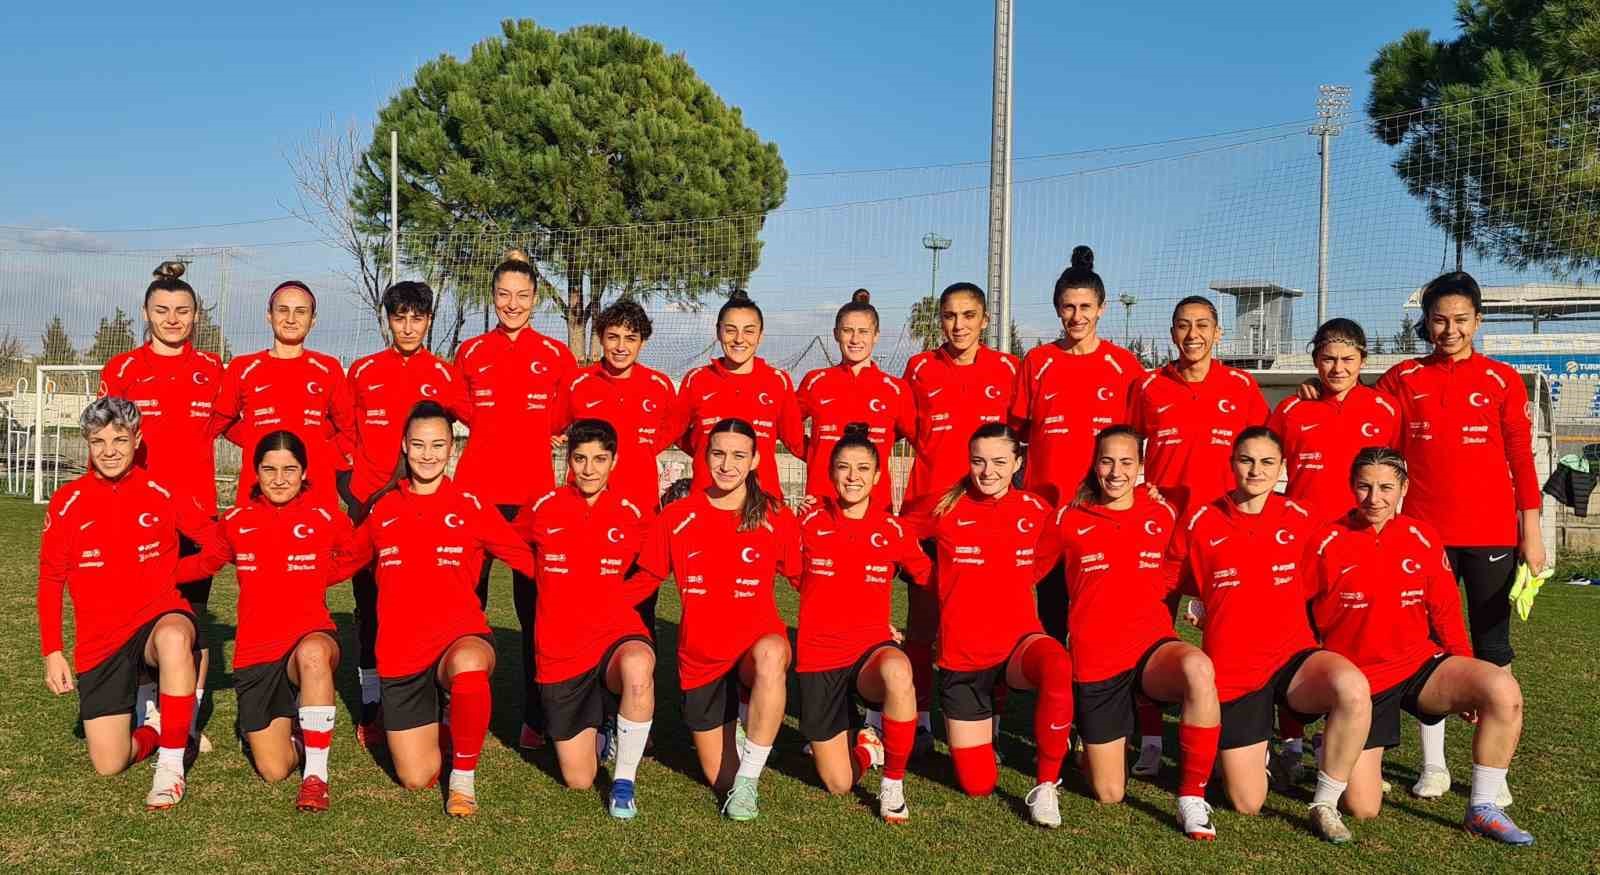 A Milli Kadın Futbol Takımı, Yunanistan ve Romanya maçlarının hazırlıklarını sürdürdü